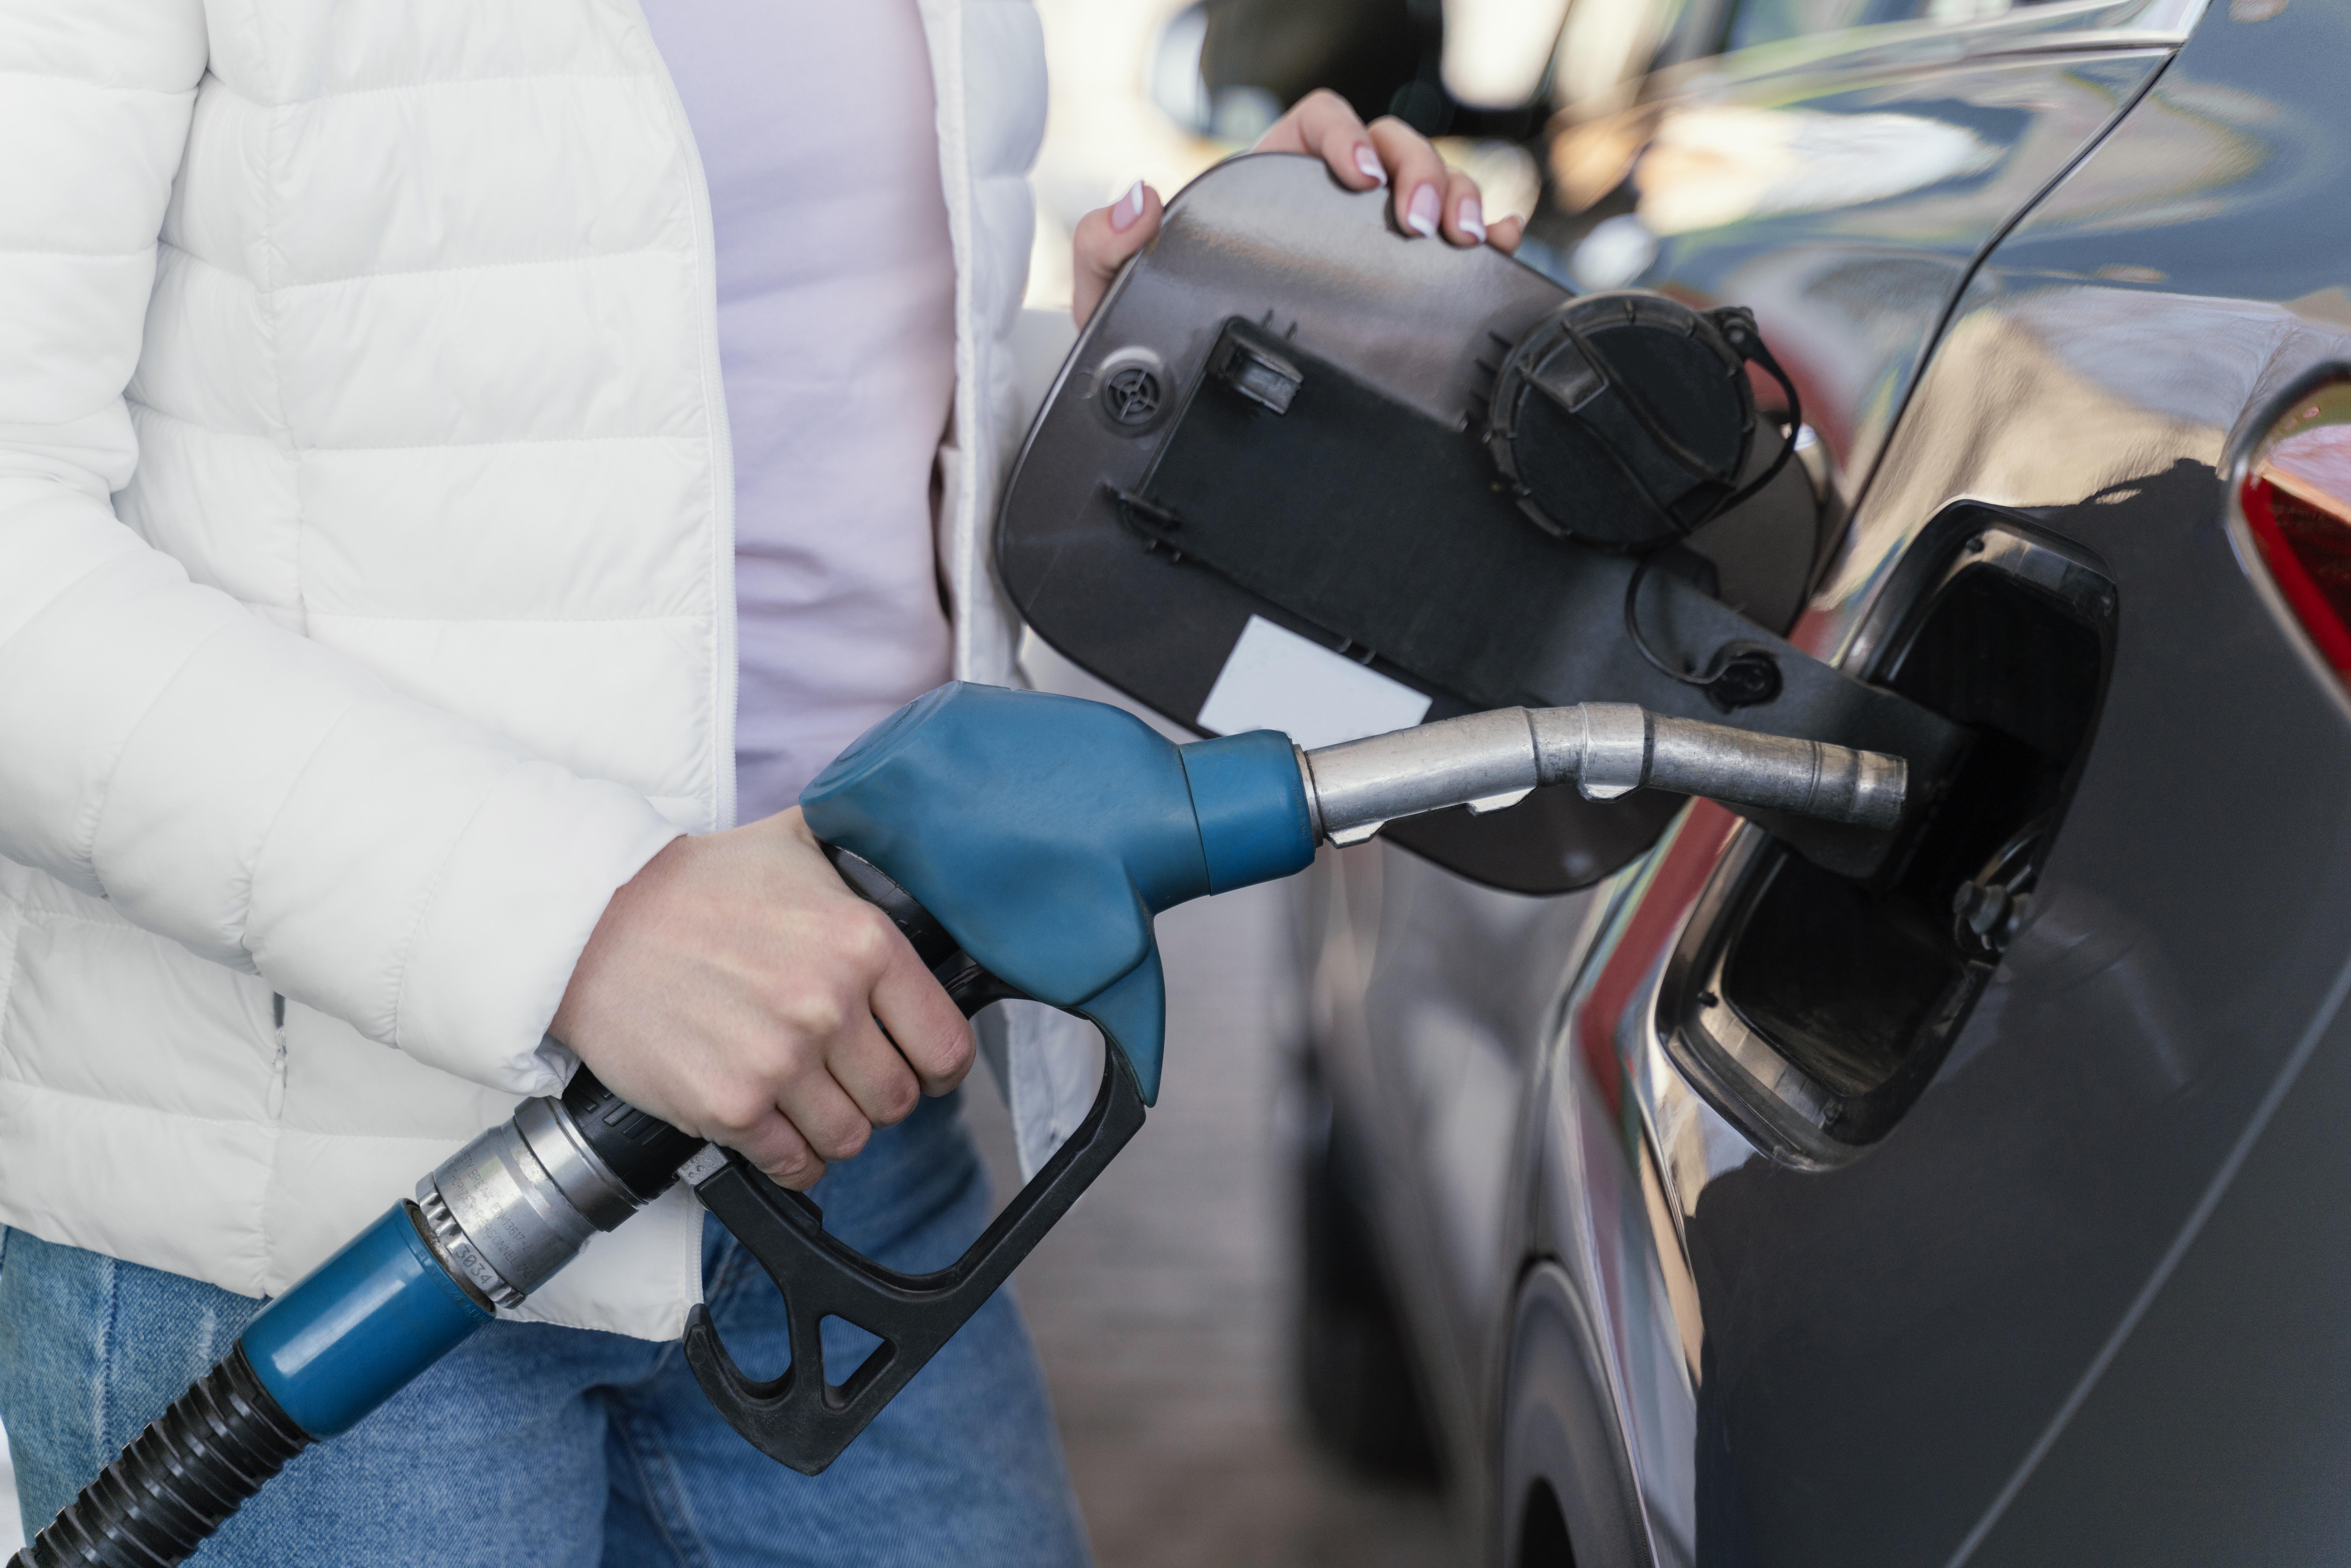 В Марий Эл растут цены на бензин и дизтопливо